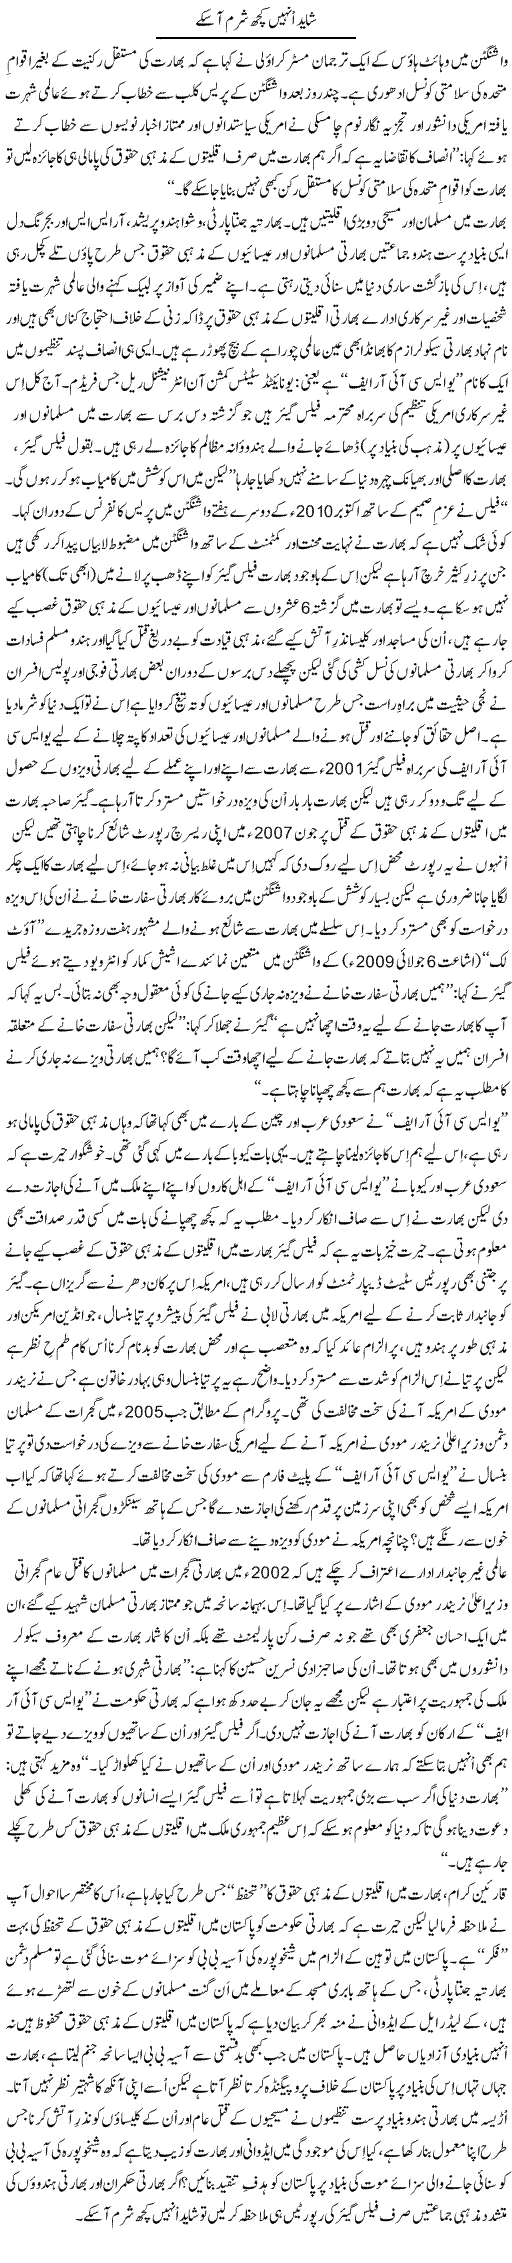 Some Shame May Come Express Column Tanvir Qasir 25 November 2010